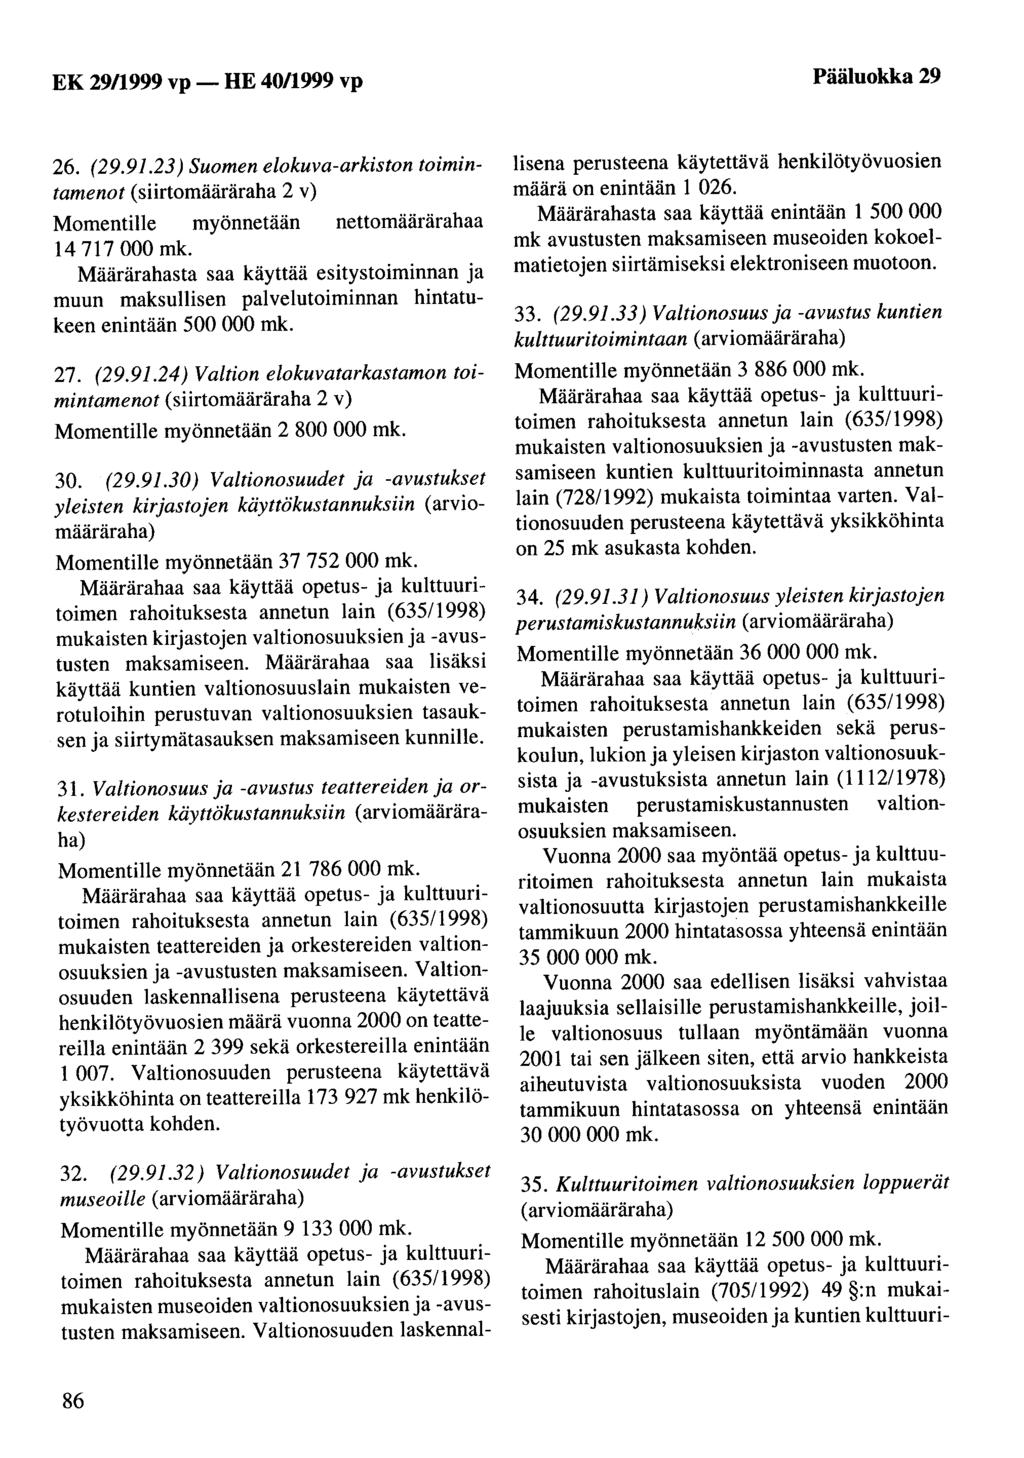 EK 29/1999 vp -HE 40/1999 vp Pääluokka 29 26. (29.91.23) Suomen elokuva-arkiston toimintamenot (siirtomääräraha 2 v) 14 717 000 mk.